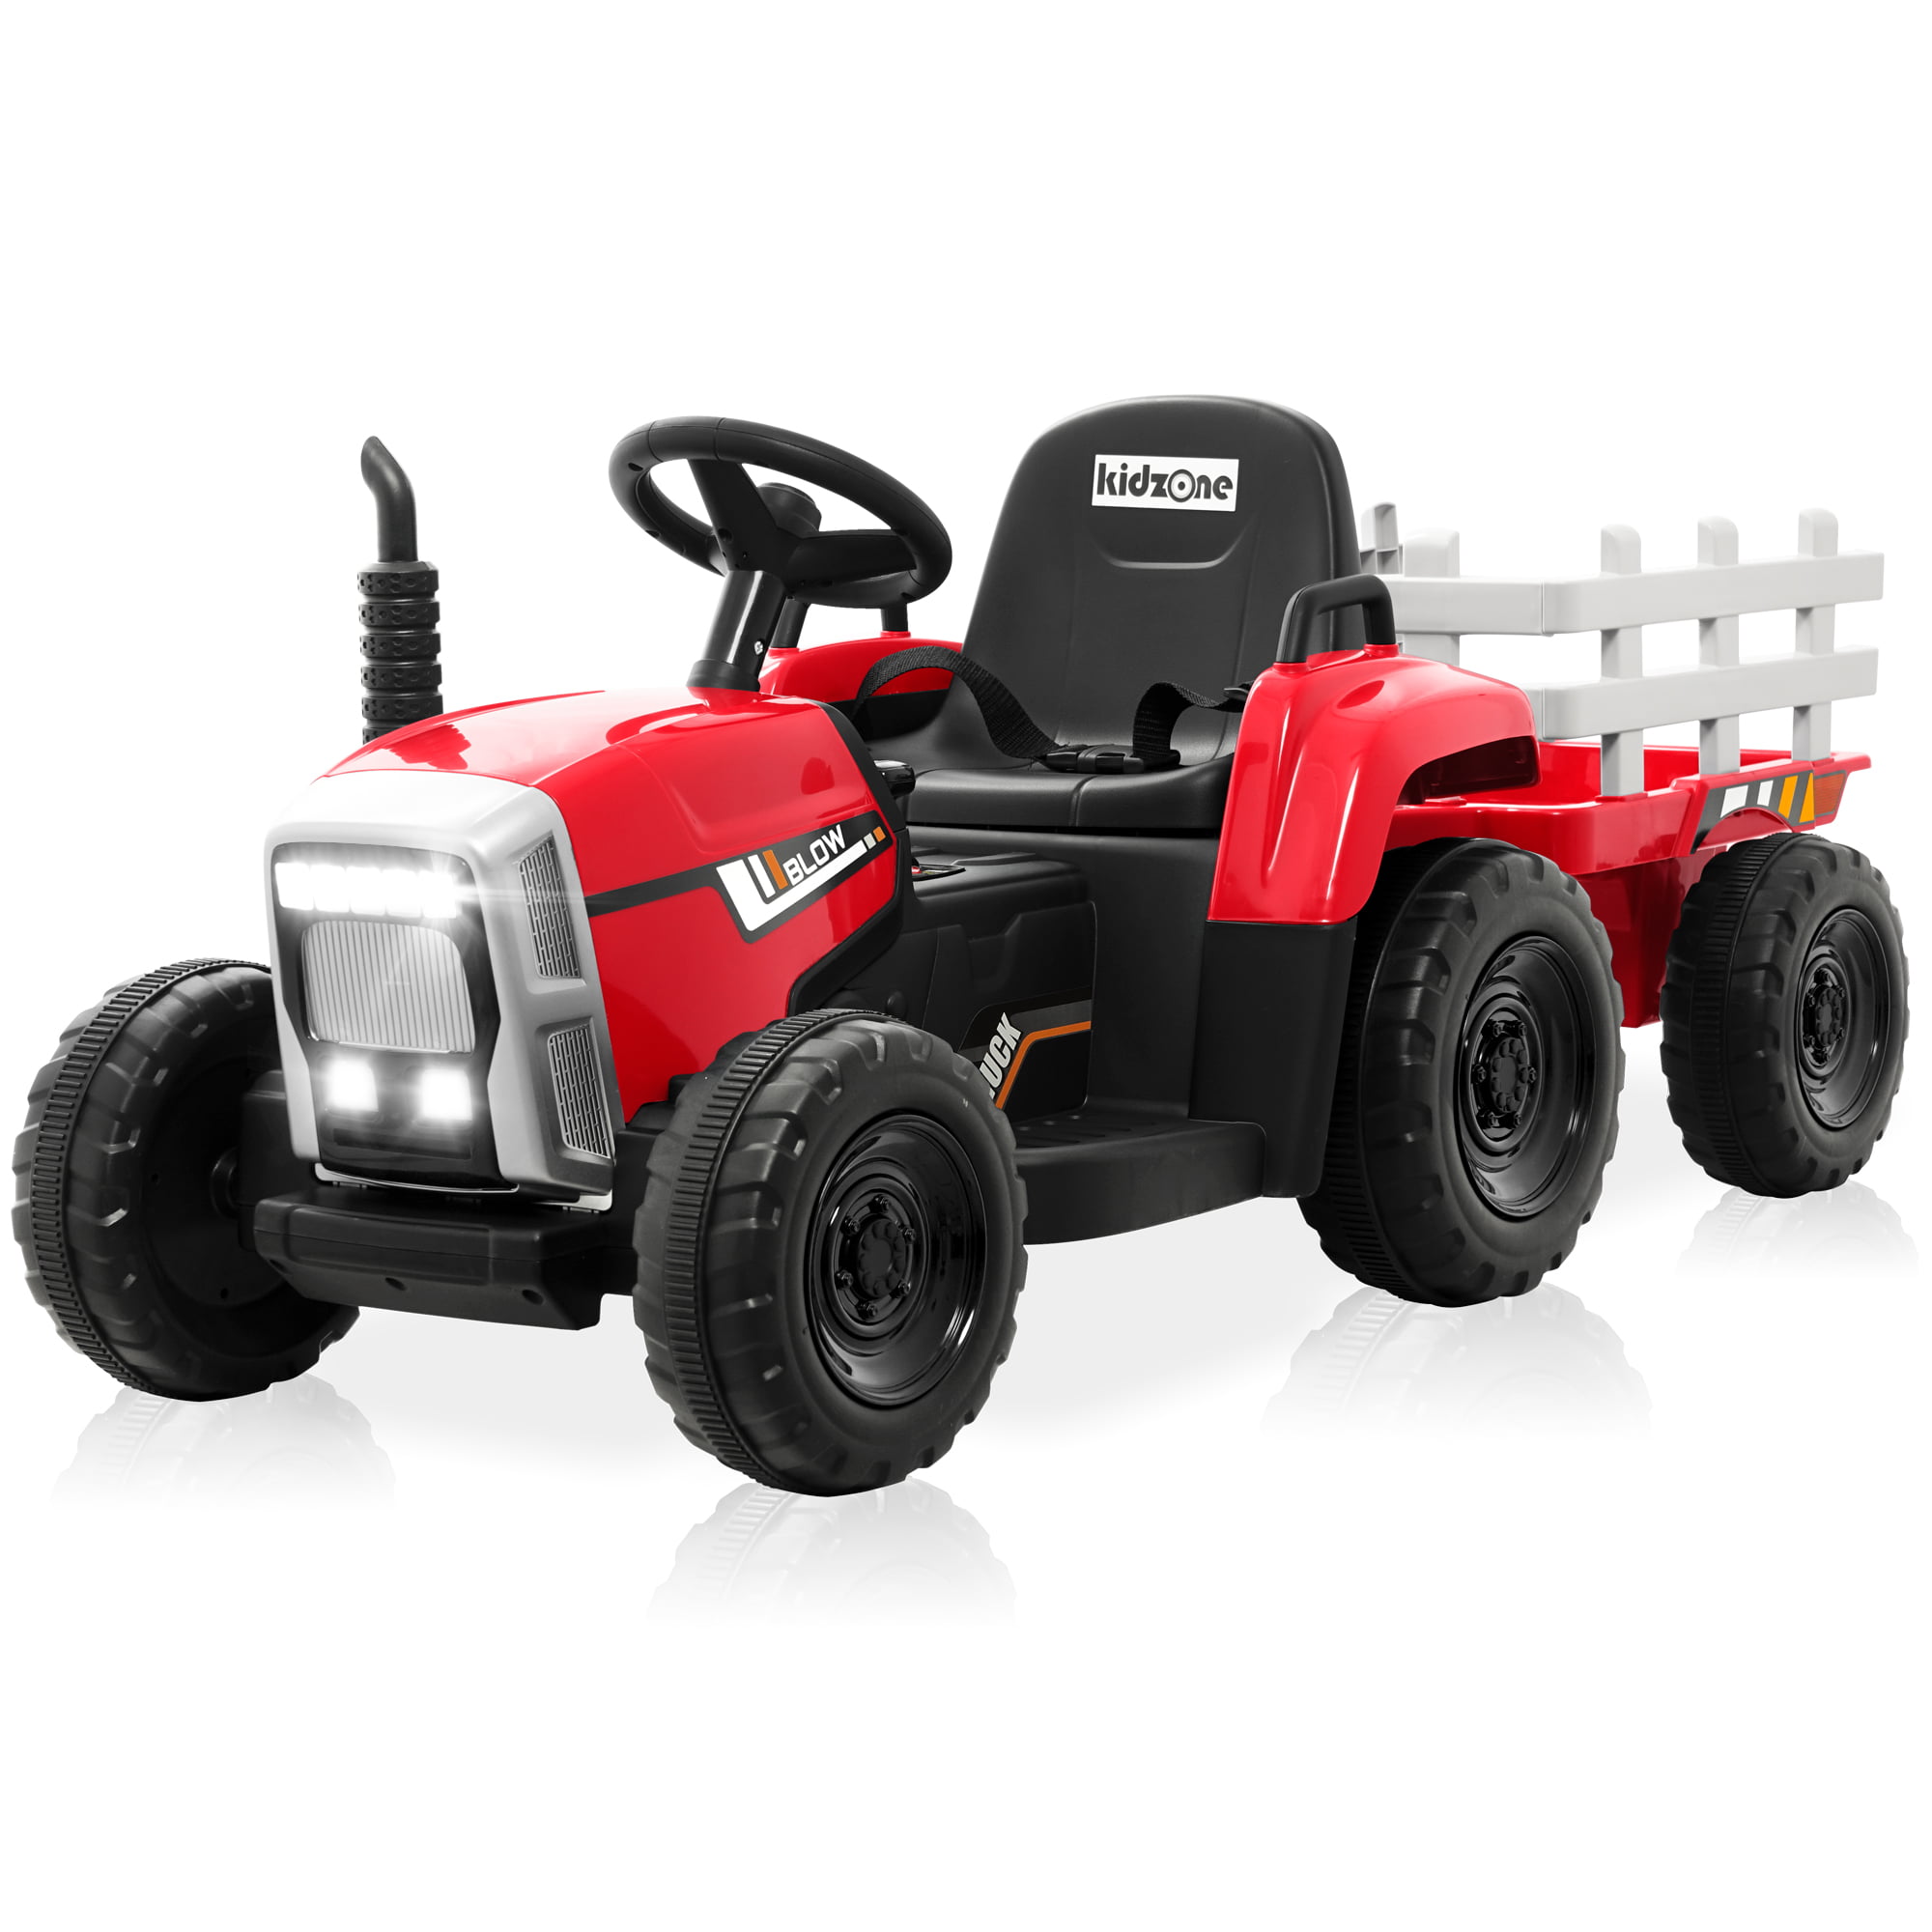 Tracteur enfant électrique agricole xl avec remorque